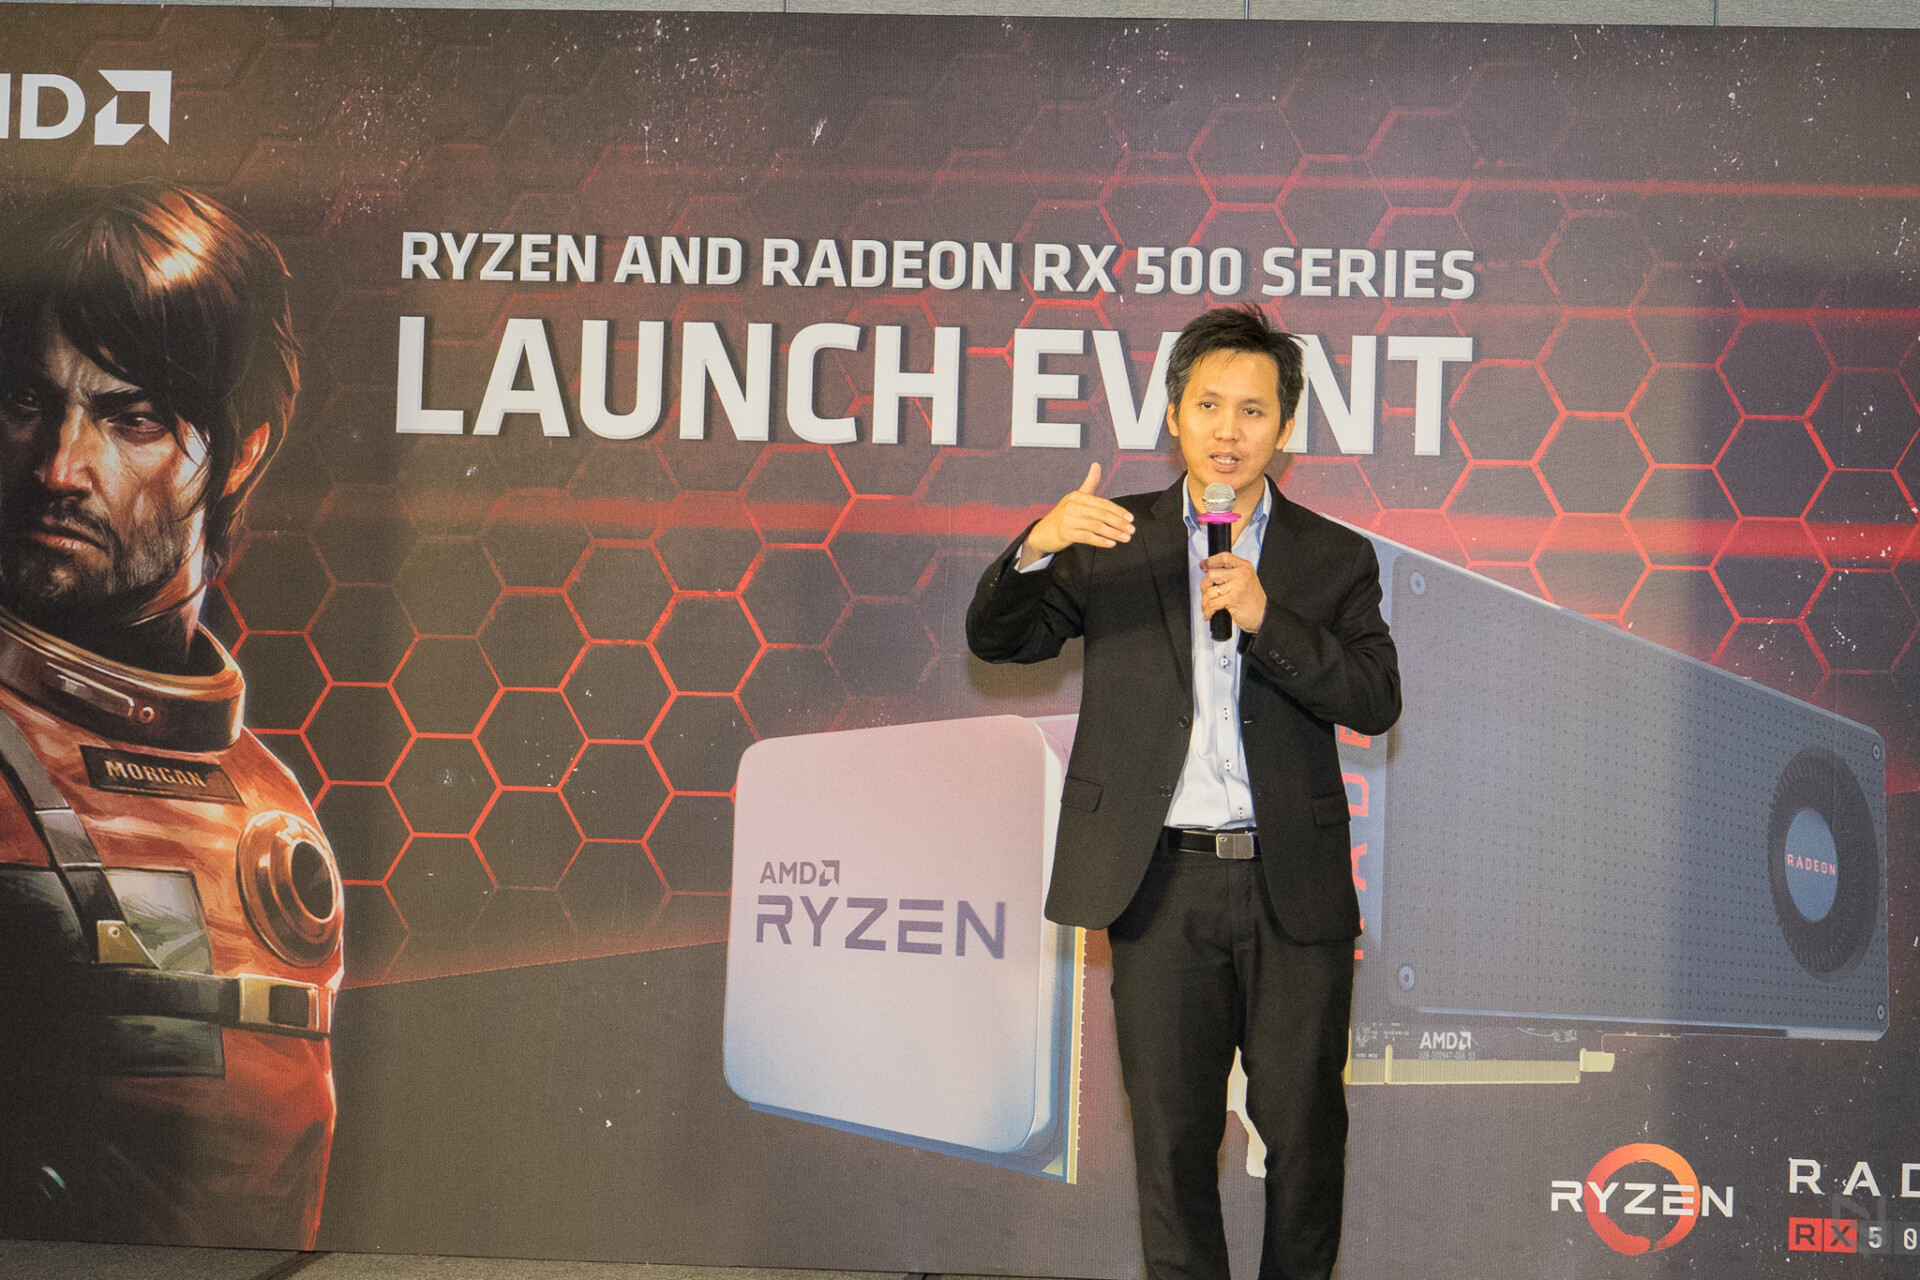 AMD chính thức ra mắt Ryzen cùng dòng card đồ hoạ Radeon RX 500